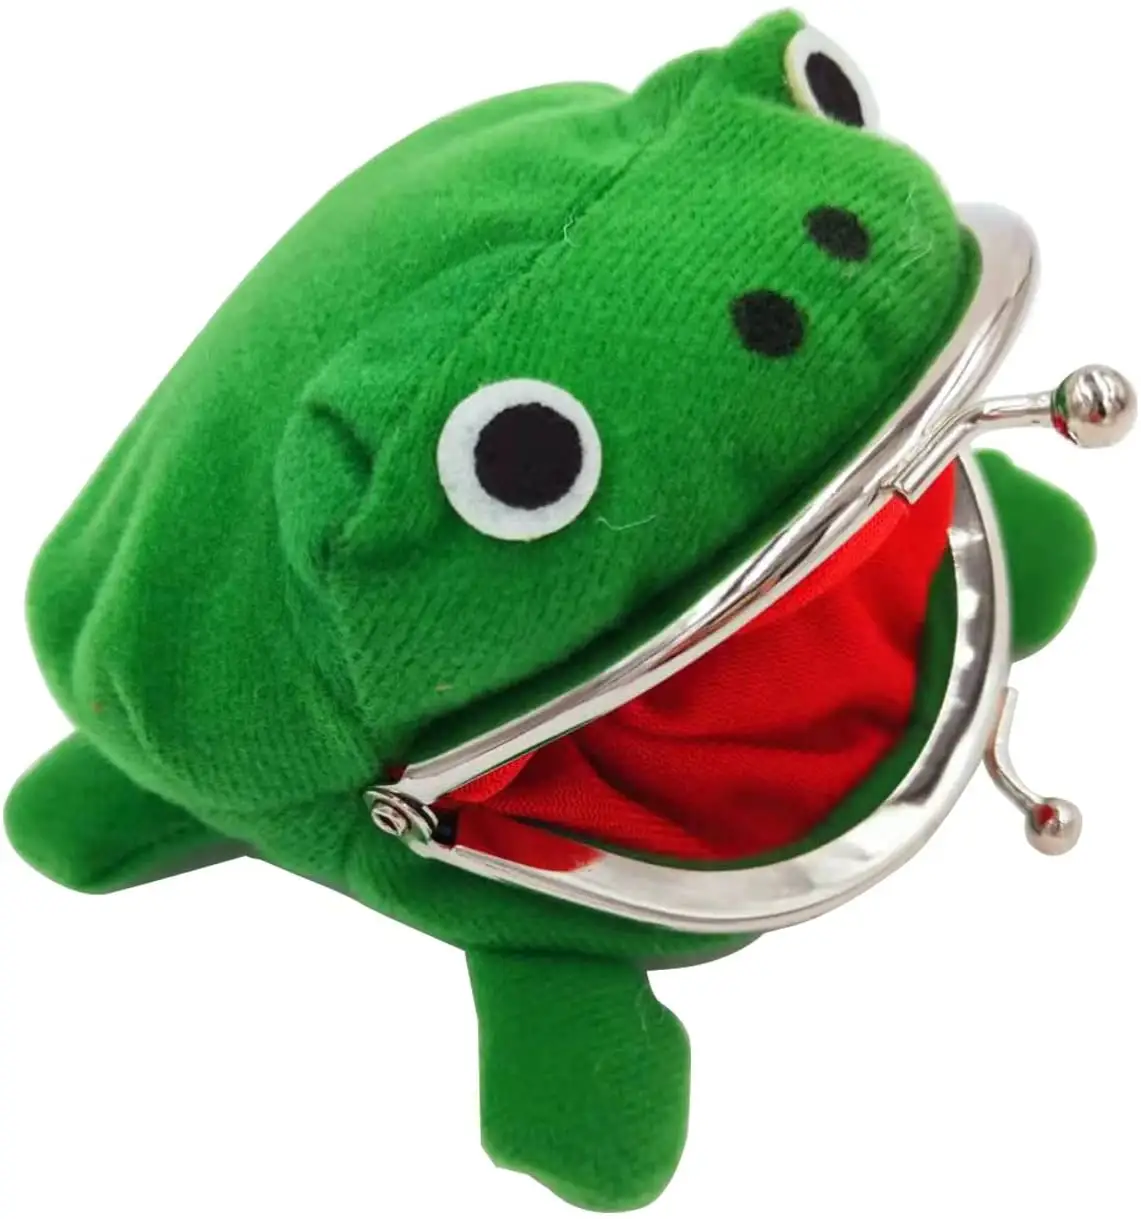 HUAYI ליל כל הקדושים חג המולד חידוש צעצוע מתנה צפרדע בפלאש ארנקי יפני אנימה קאקאשי צפרדע ארנק בפלאש מטבע ארנק